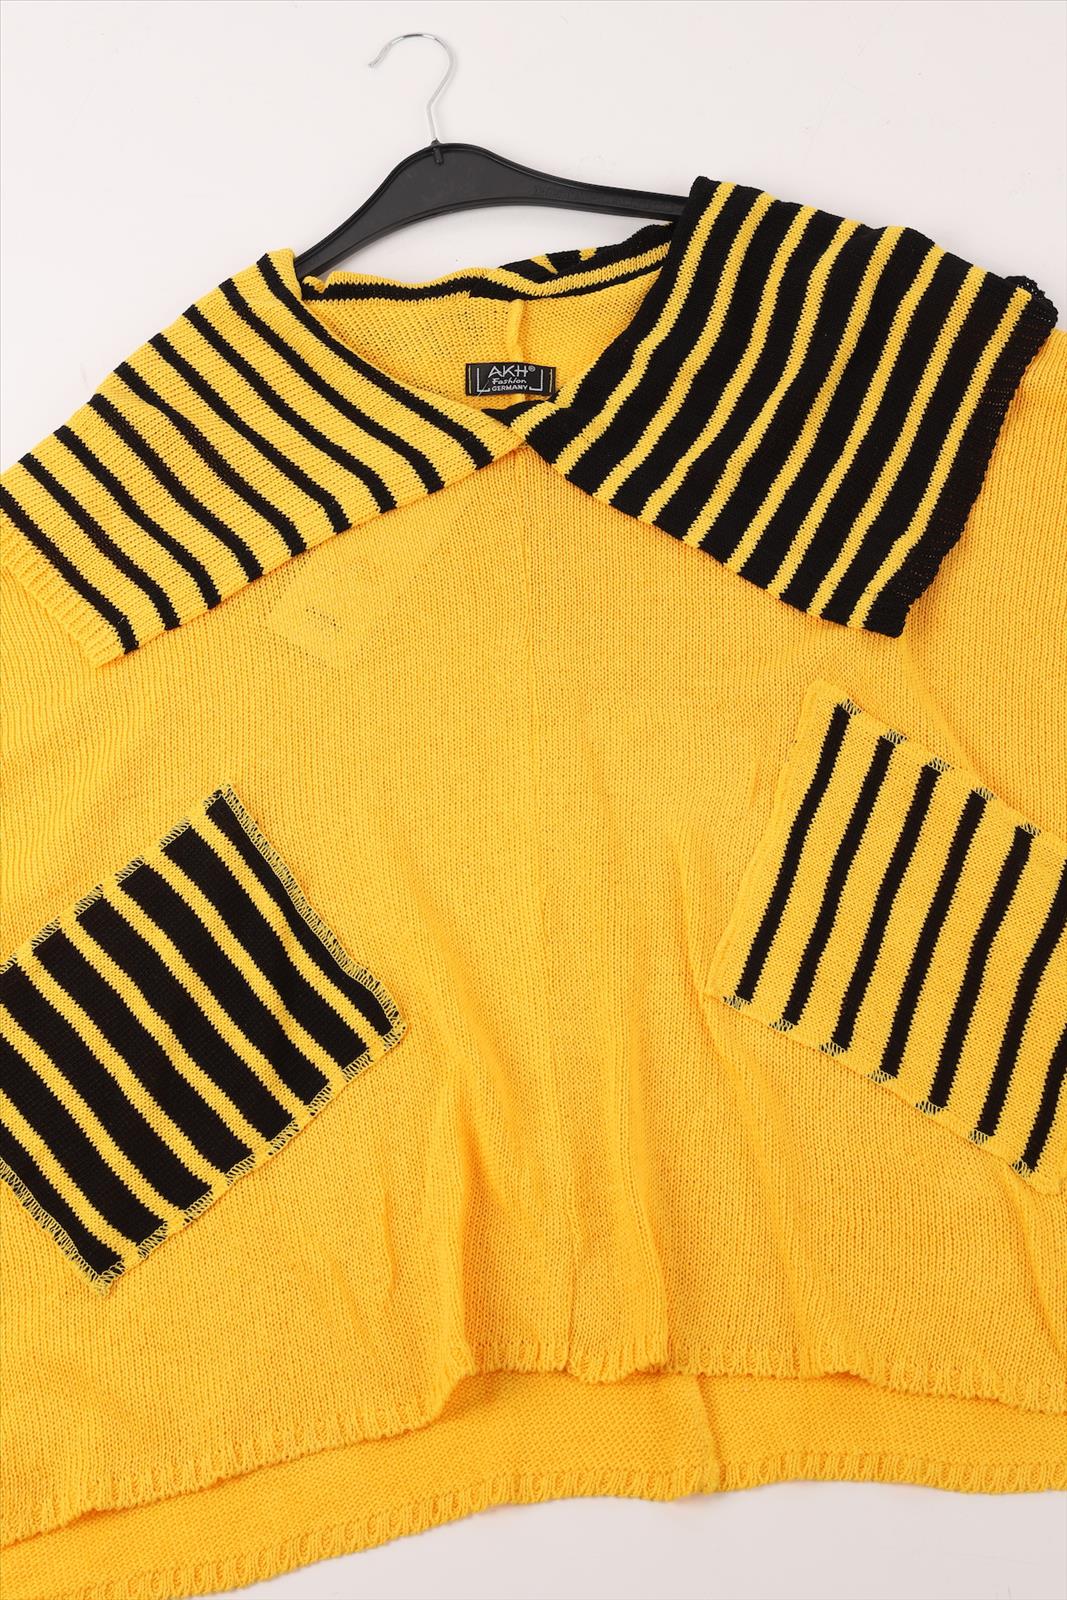 Übergangs Pullover in kastiger Form aus er Qualität, Gelb-Schwarz Lagenlook Oversize Mode B2B Großhandel